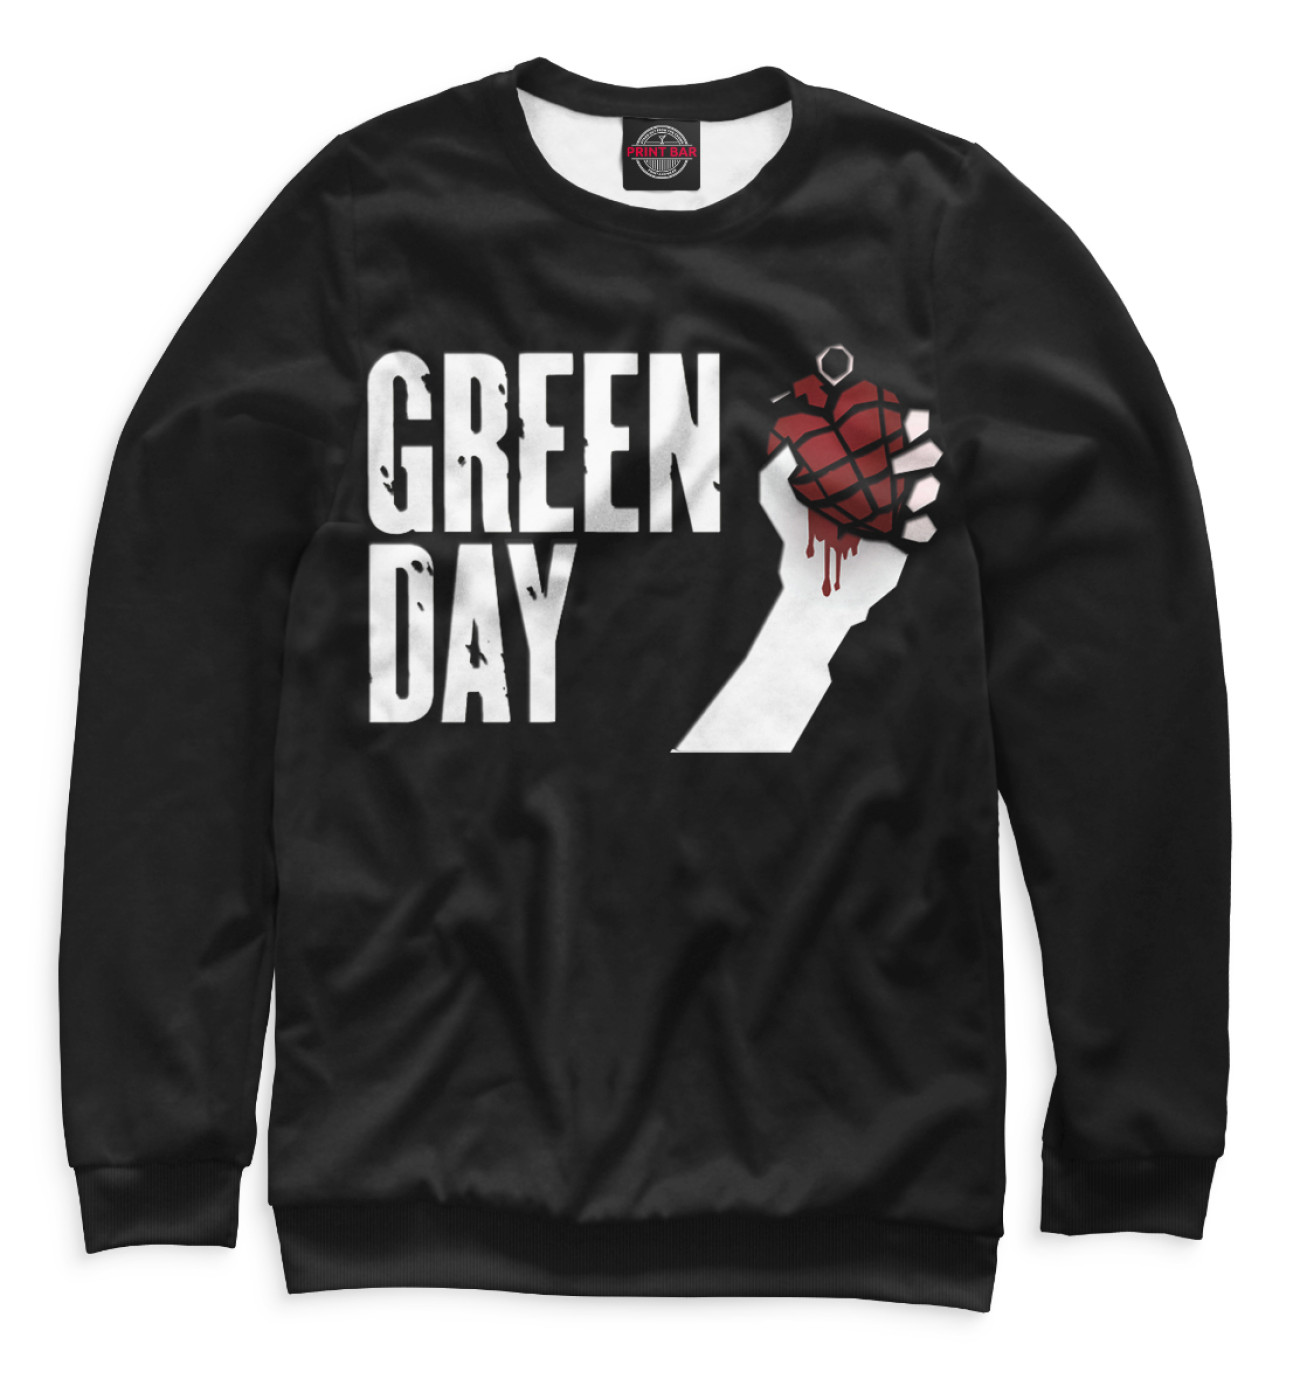 Женский Свитшот Green Day, артикул: GRE-315032-swi-1